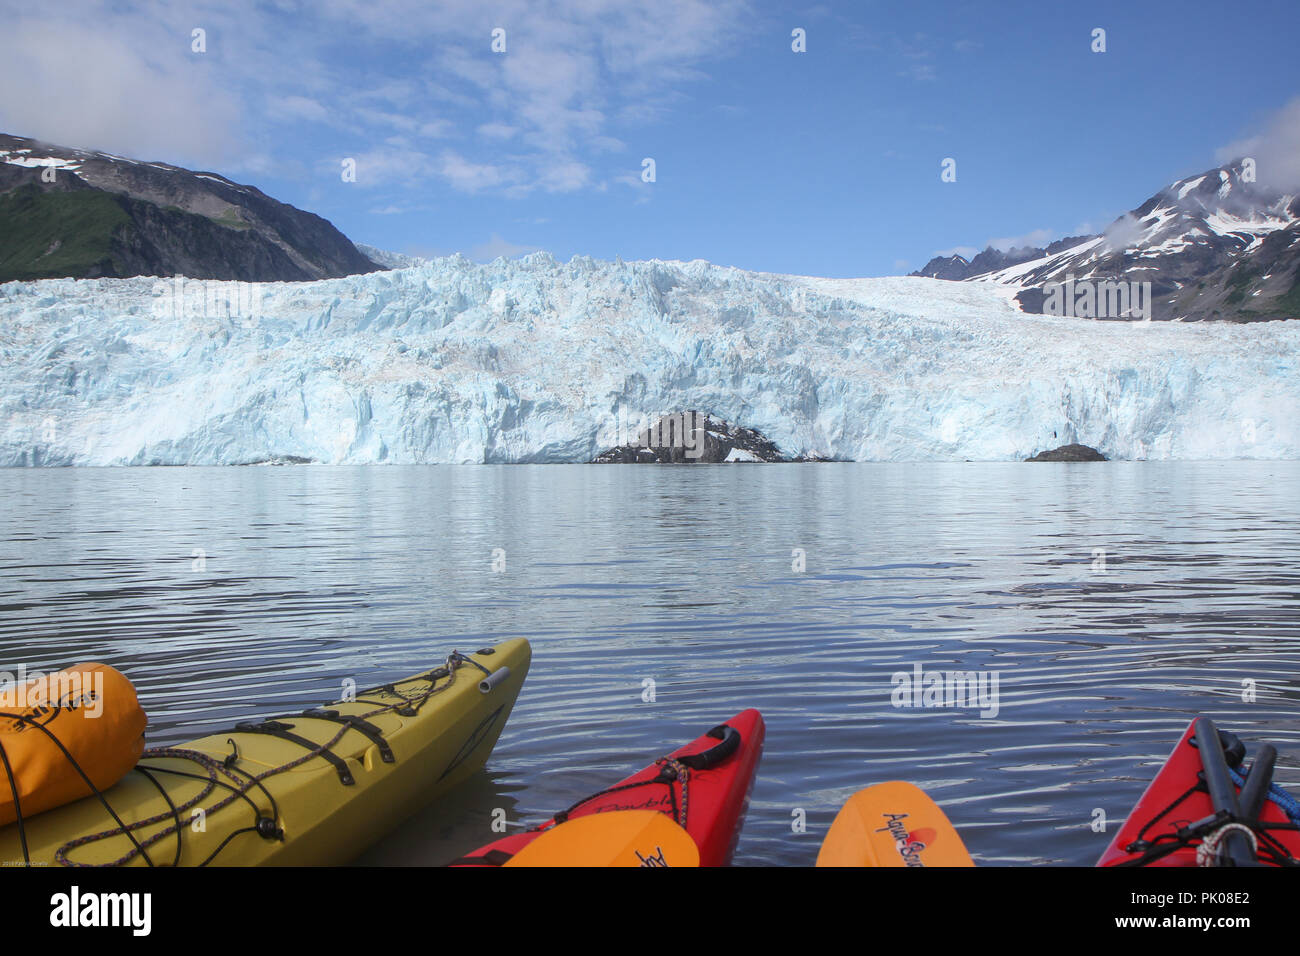 Suggerimenti di kayak in acqua nella parte anteriore del ghiacciaio Aialik, Aialik Bay, Alaska, Stati Uniti d'America. Suggerimenti di kayak in primo piano, ghiacciaio in background. Foto Stock